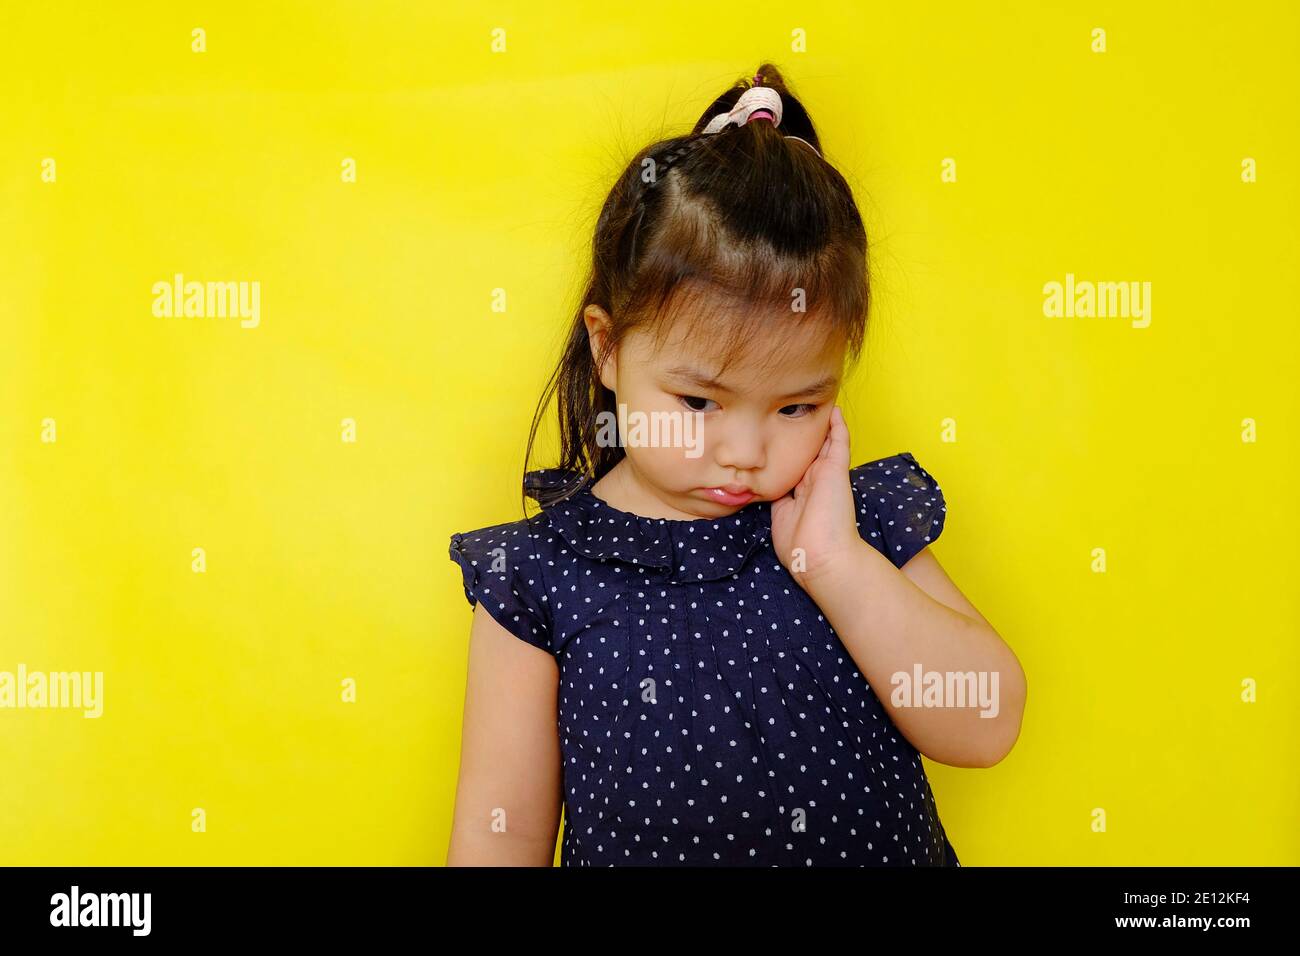 Une jolie jeune fille asiatique debout seule se sentant bouleversée, frustrée, et déçue, regardant vers le bas, pensant. Arrière-plan jaune vif. Banque D'Images